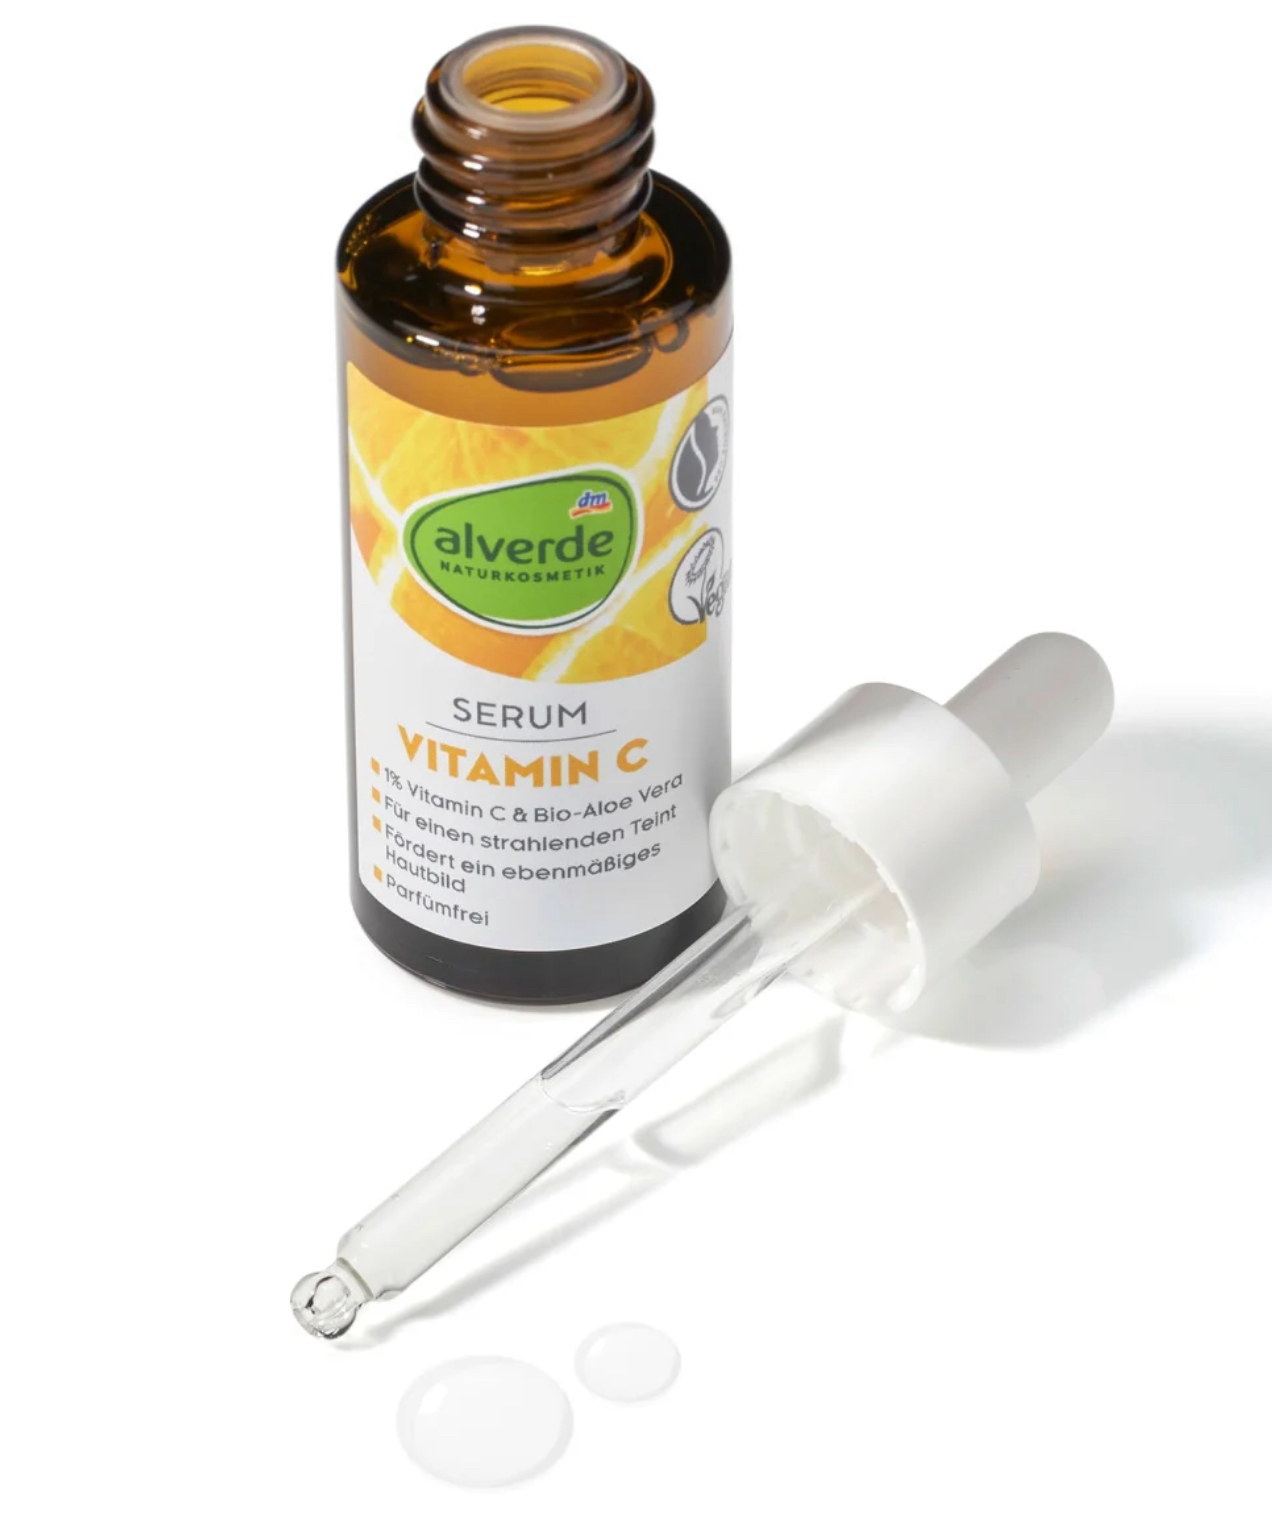 alverde NATURAL COSMETICS Serum Vitamin C, 30 ml